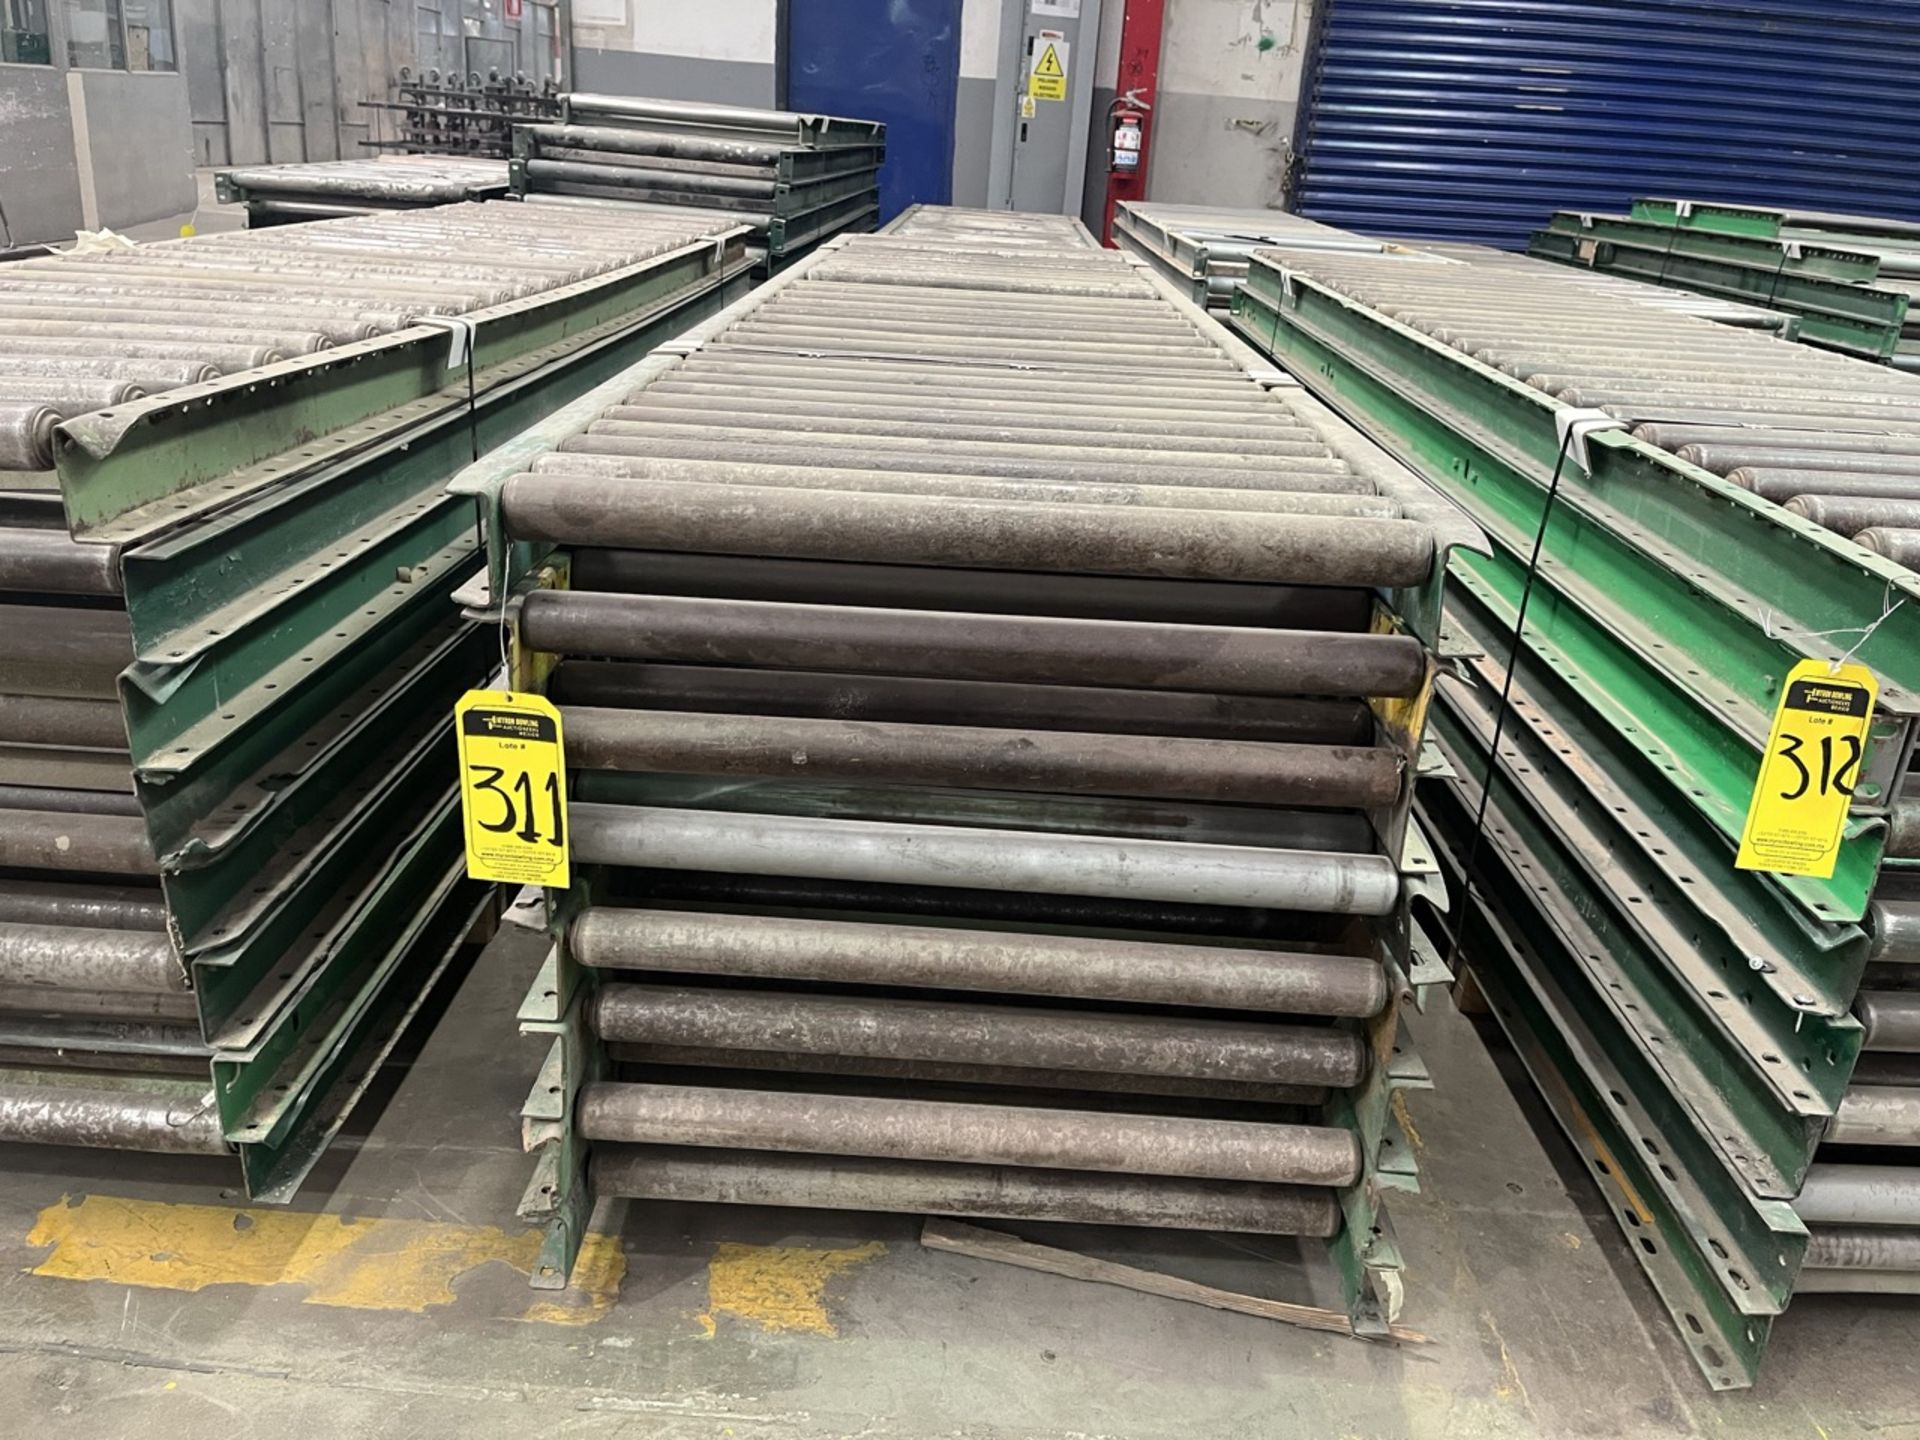 15 pieces of roller conveyor belt measuring approx. 79 cm wide x 3 m long. / 15 Piezas de banda tra